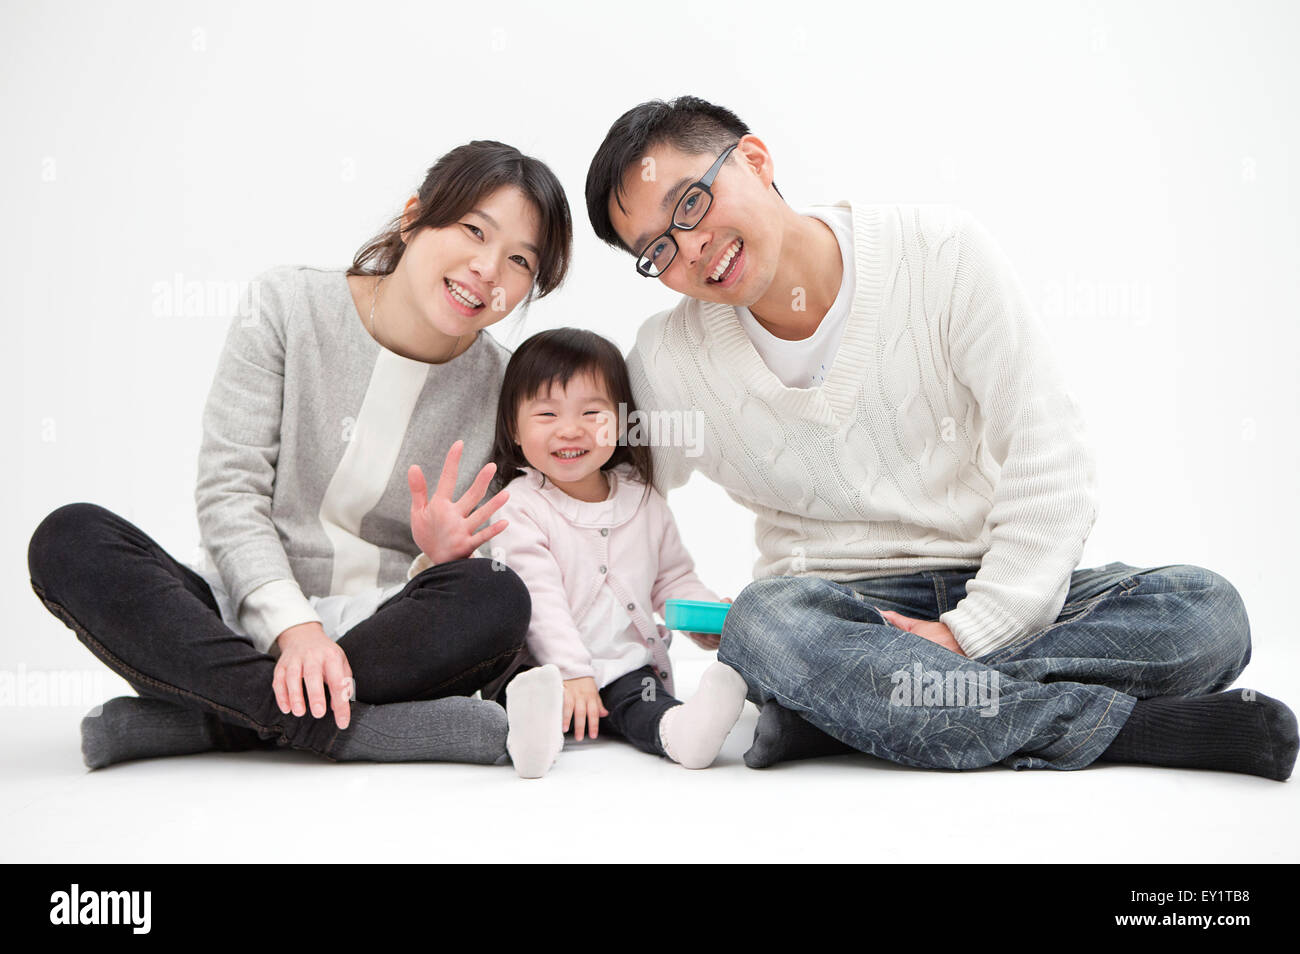 Famille avec un enfant assis et souriant à l'ensemble, l'appareil photo Banque D'Images